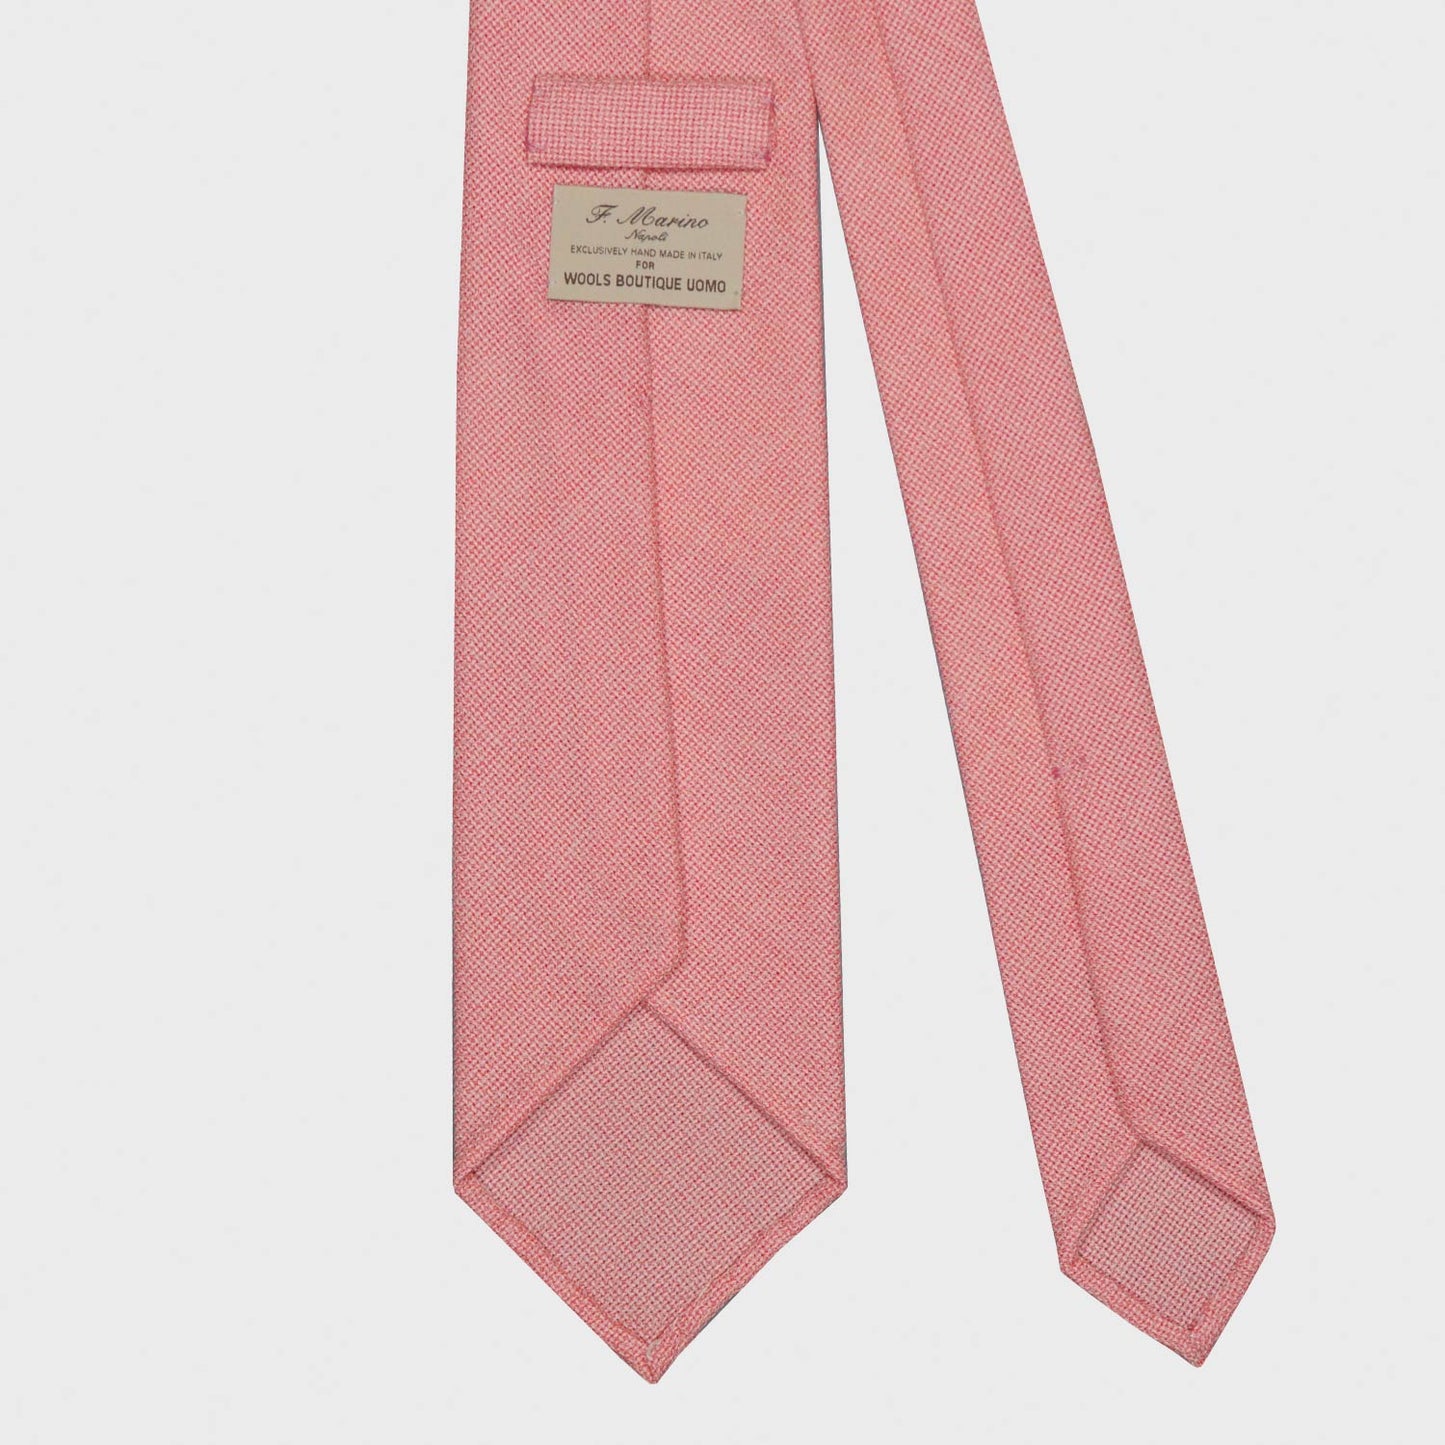 Elegant wool tie in pink colour